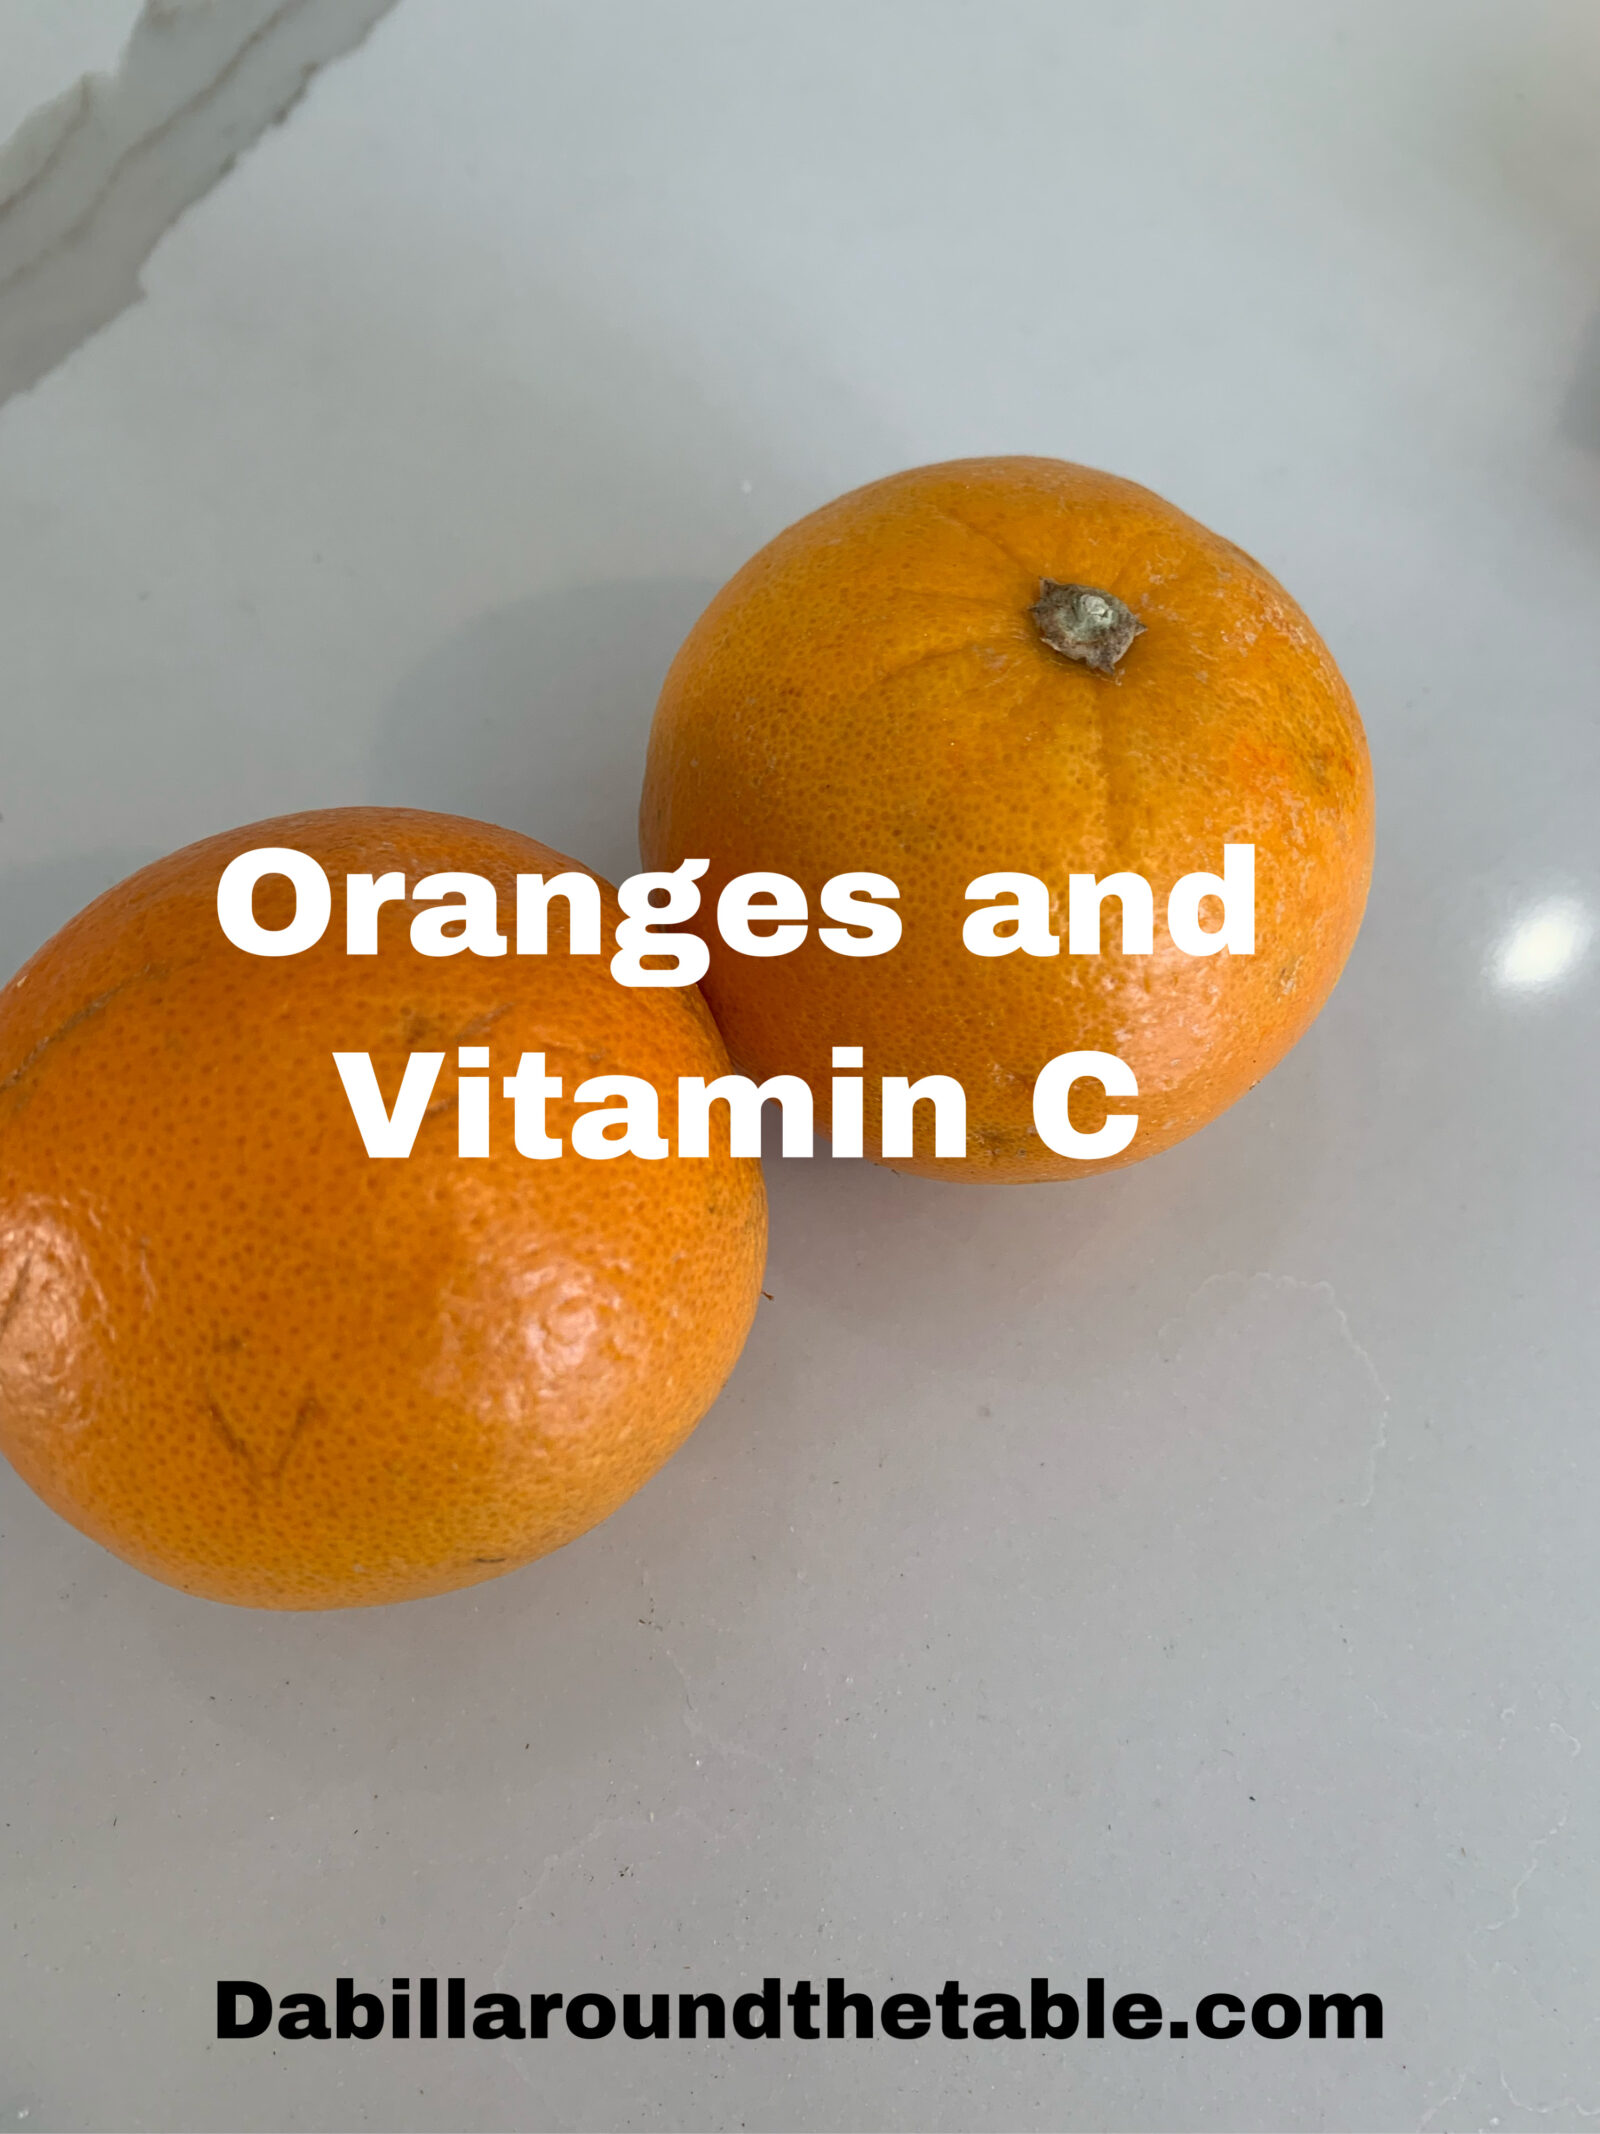 Oranges and Vitamin C